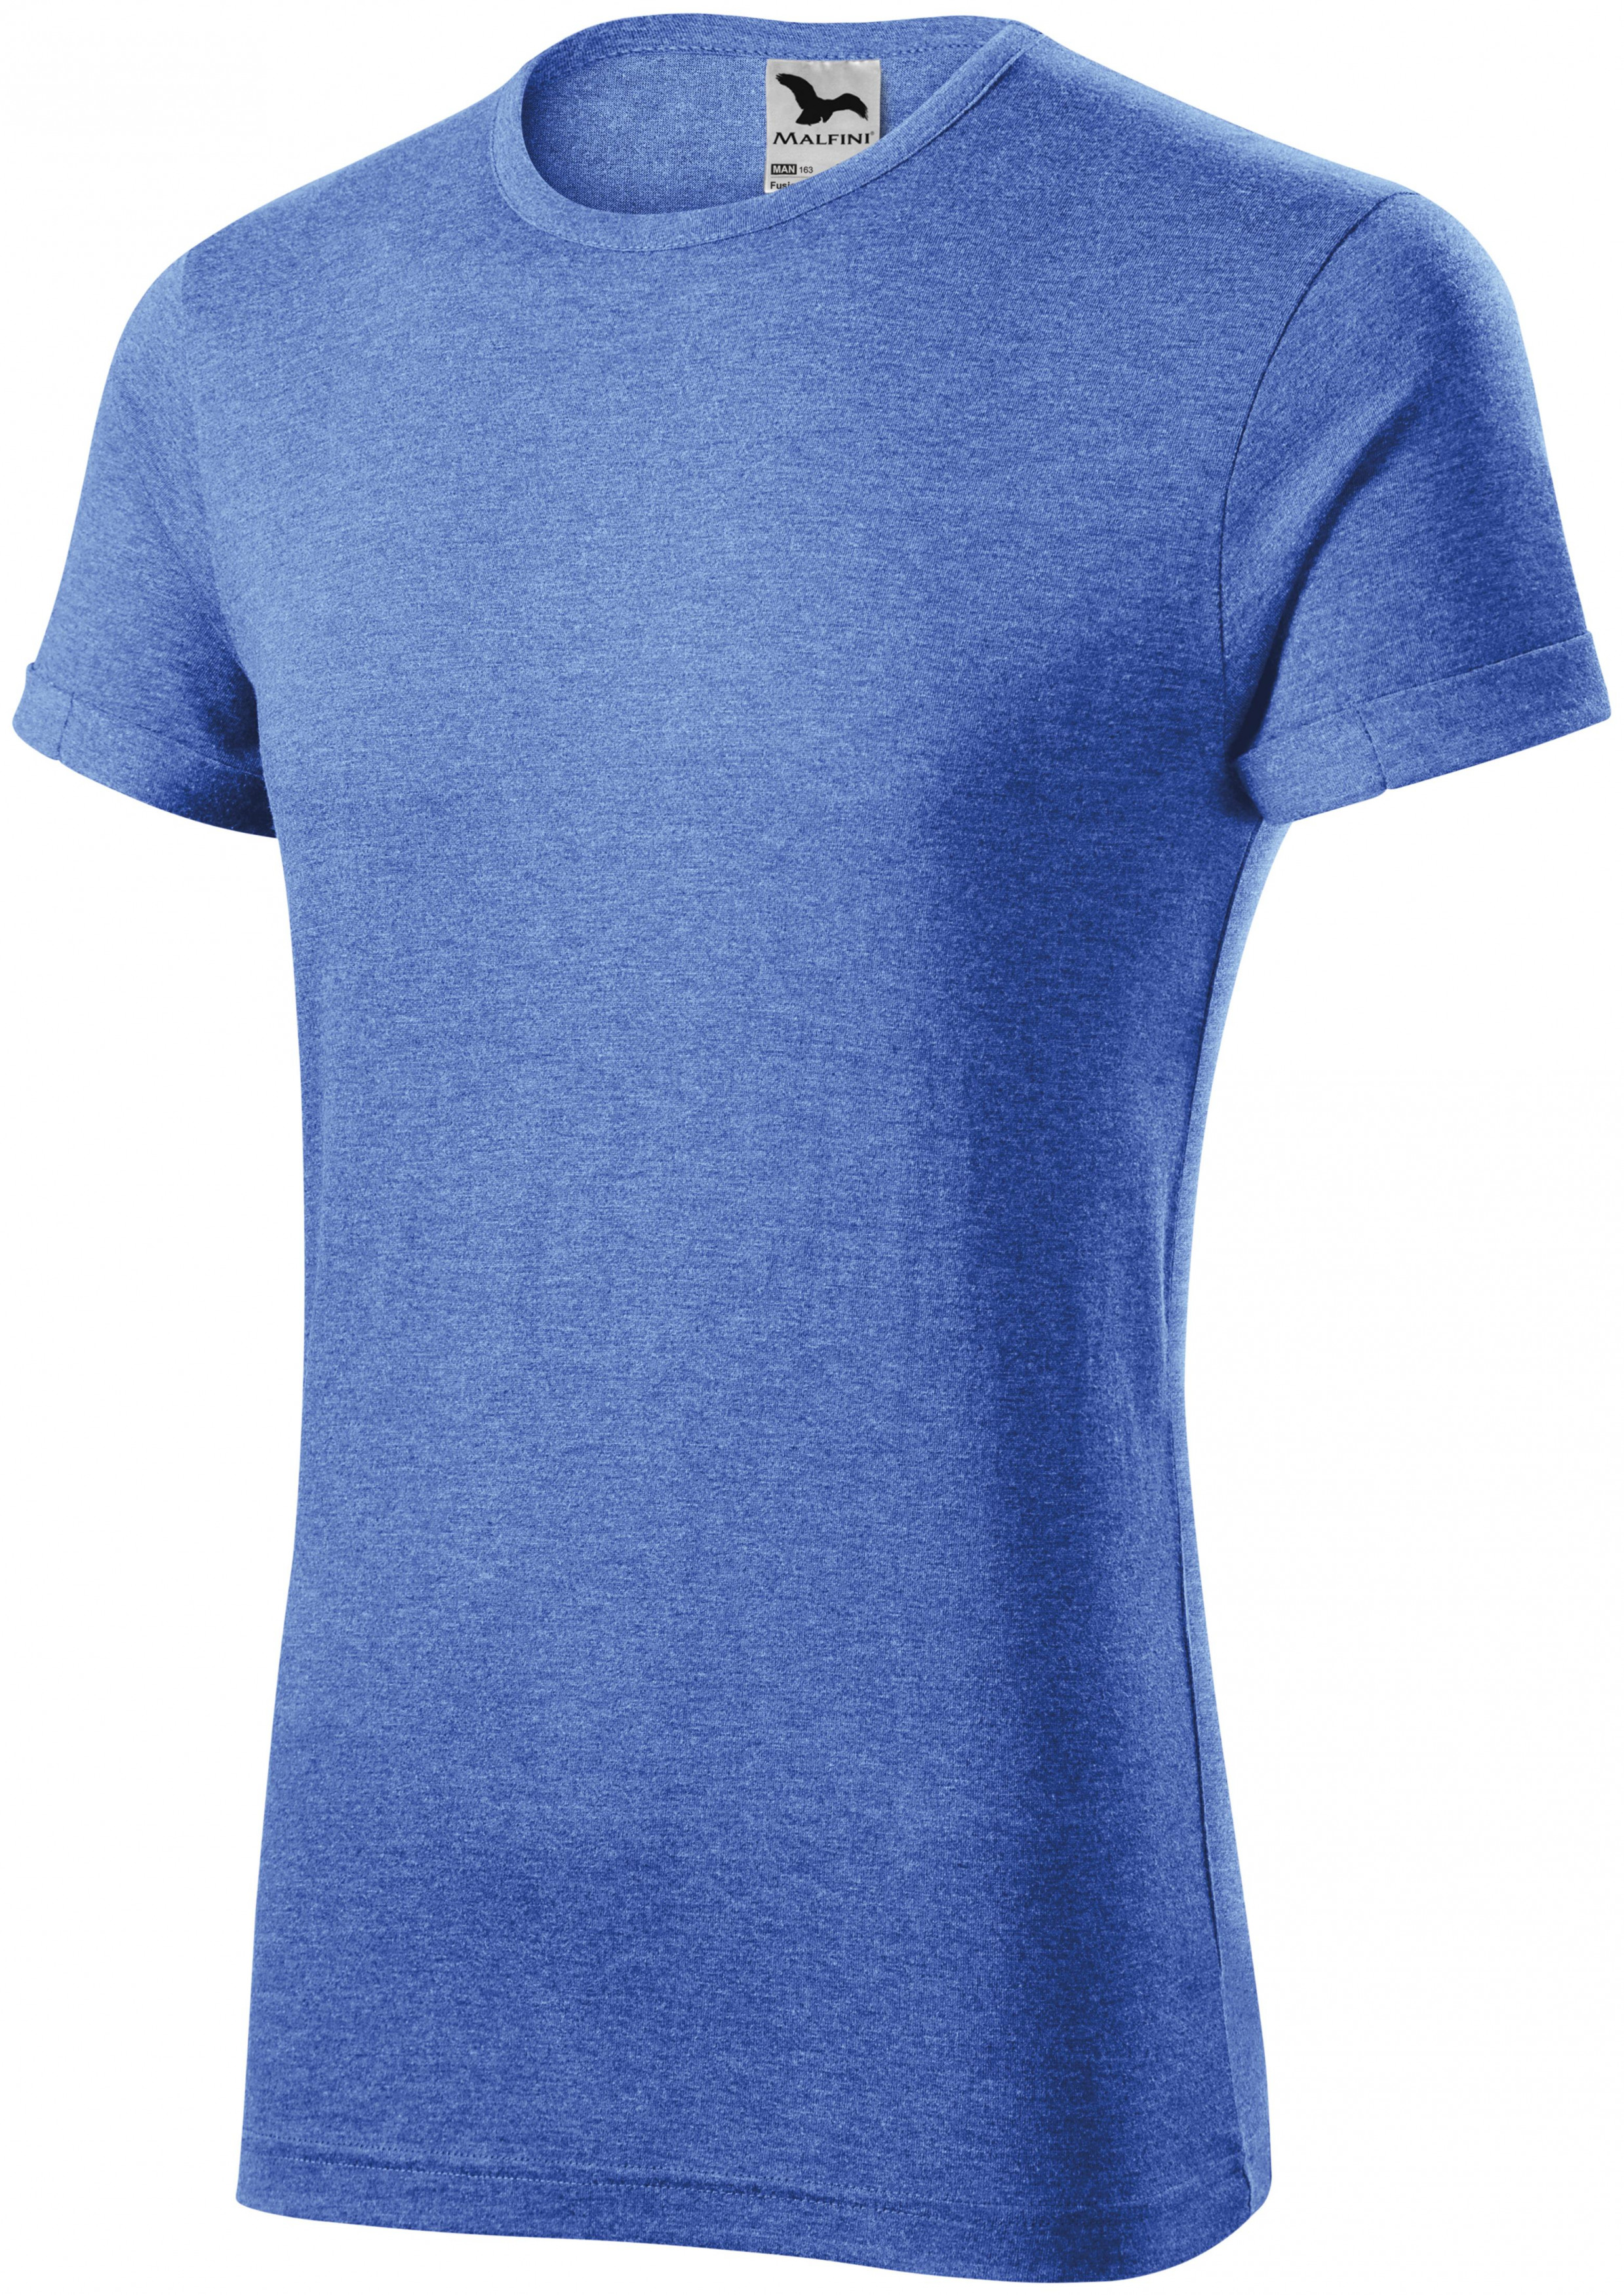 Pánske tričko s vyhrnutými rukávmi, modrý melír, S